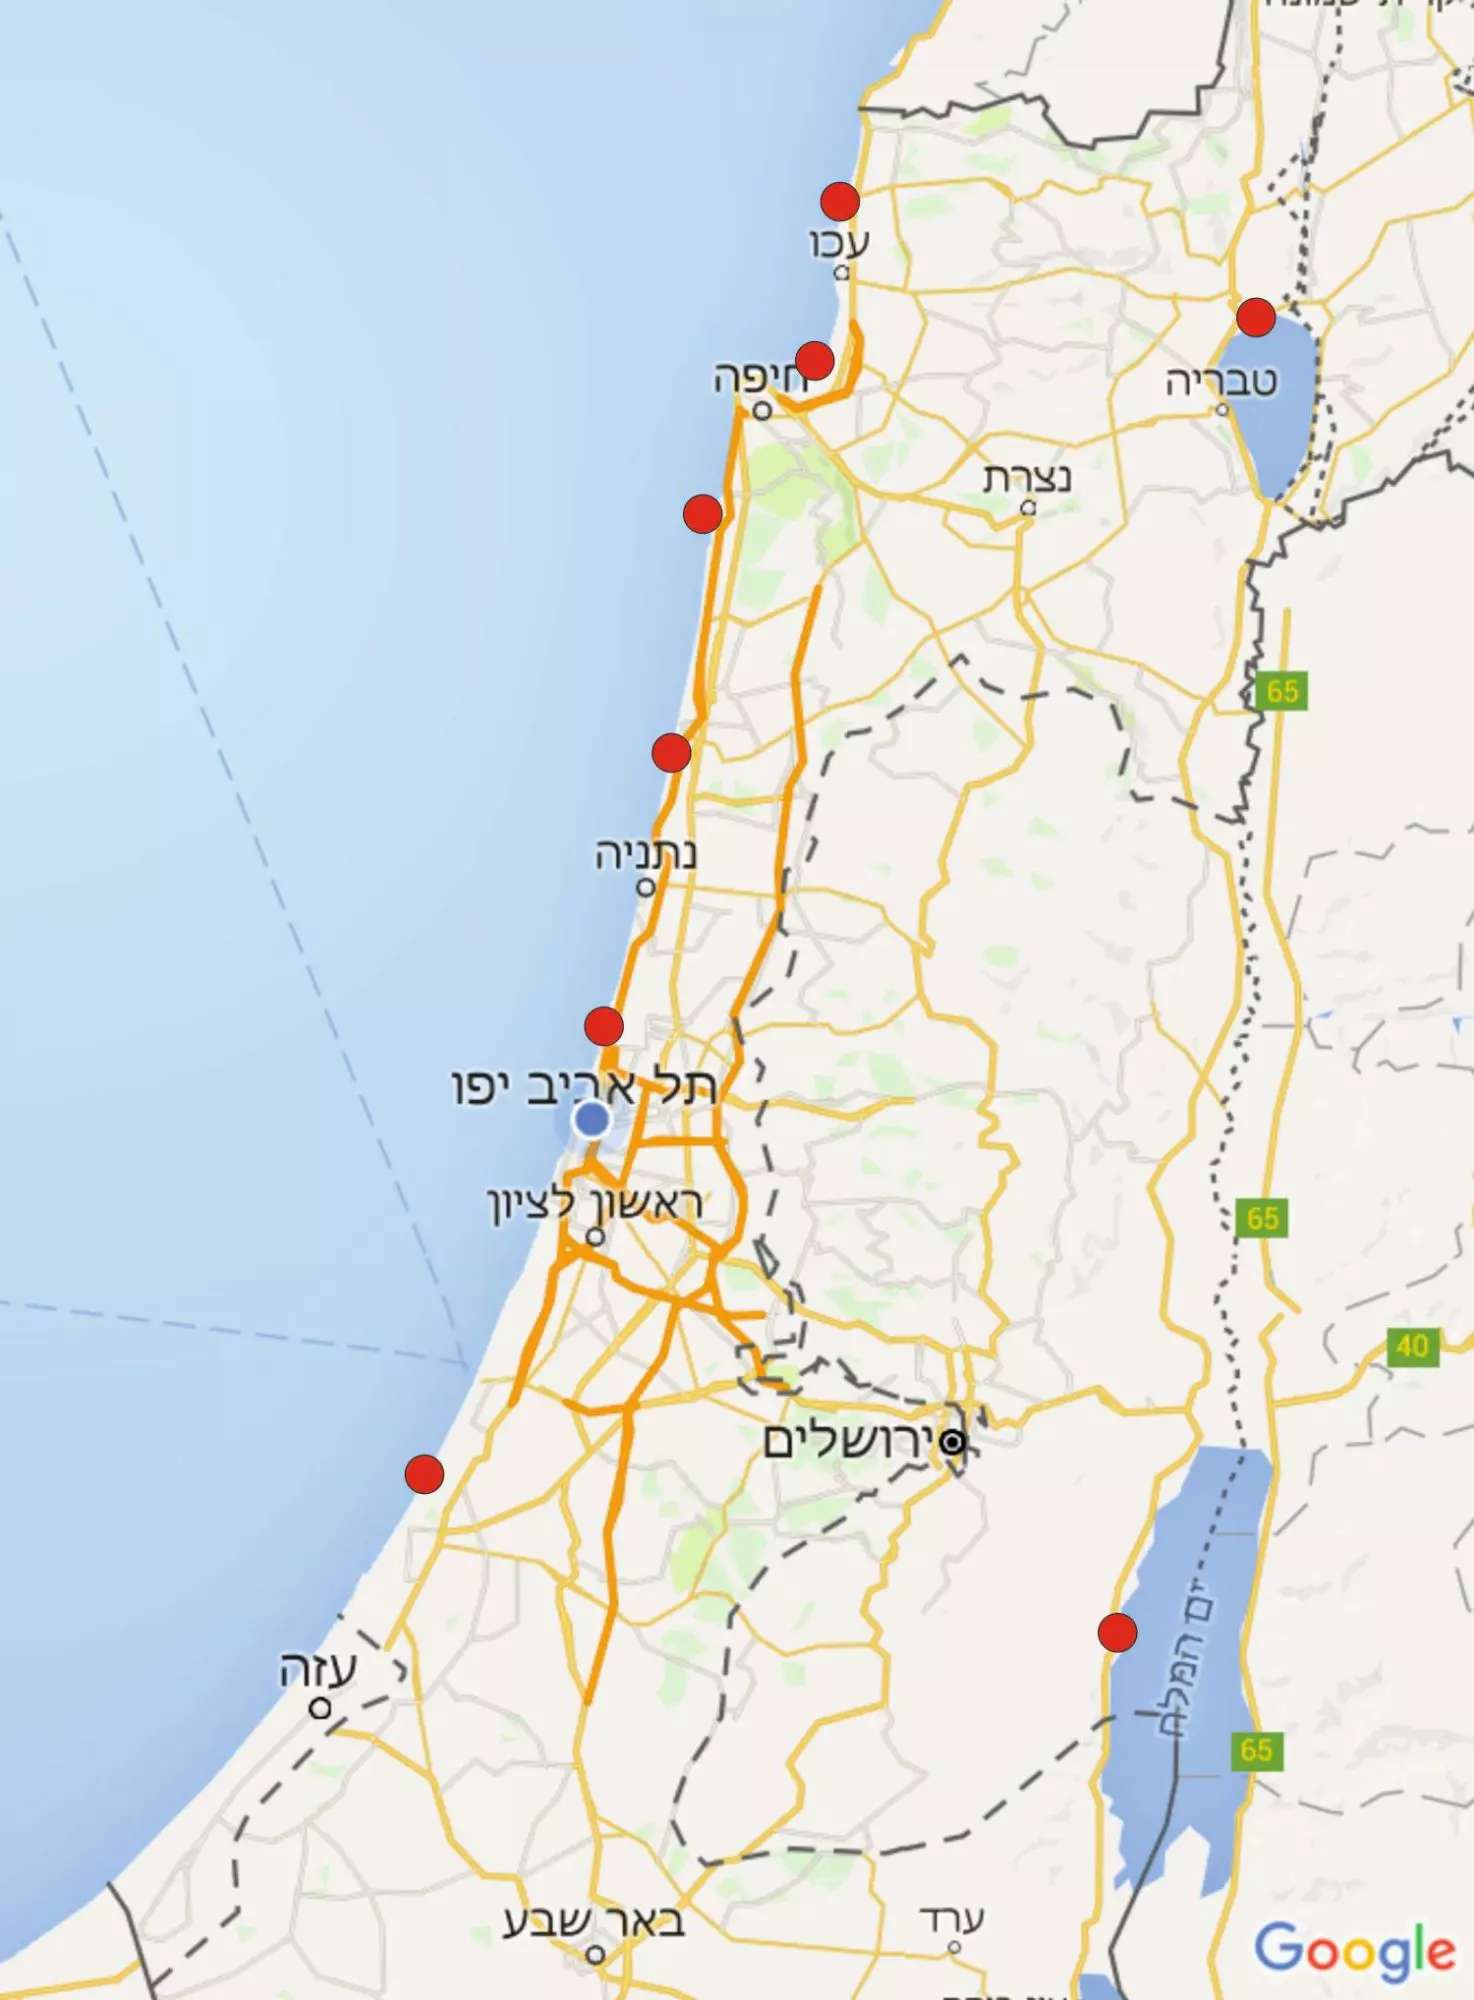 190 הקילומטרים של חופי ישראל דחוסים במפעלים פטרוכימיים וביטחוניים, מחנות צבא וערים שוקקות; זה לא אומר שאי אפשר למצוא כמה נקודות פנויות לקייט